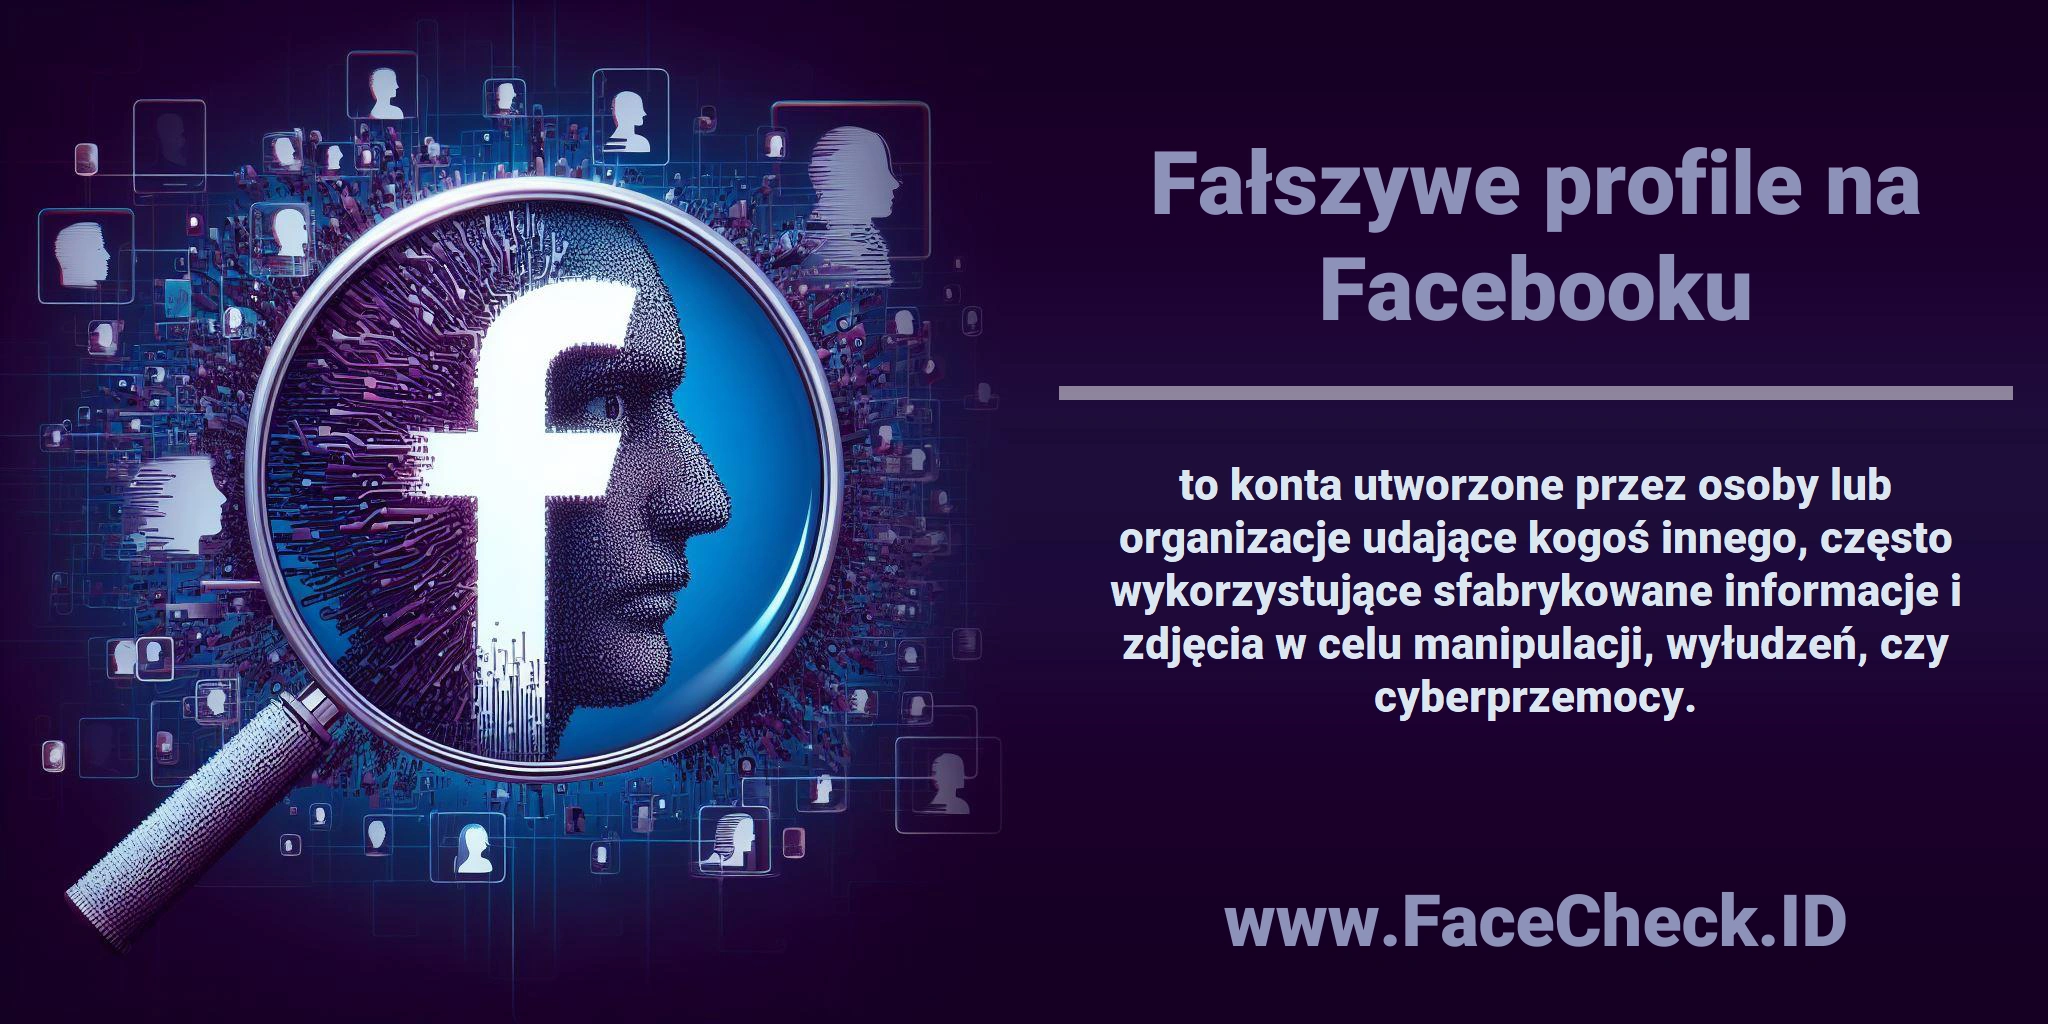 <b>Fałszywe profile na Facebooku</b> to konta utworzone przez osoby lub organizacje udające kogoś innego, często wykorzystujące sfabrykowane informacje i zdjęcia w celu manipulacji, wyłudzeń, czy cyberprzemocy.